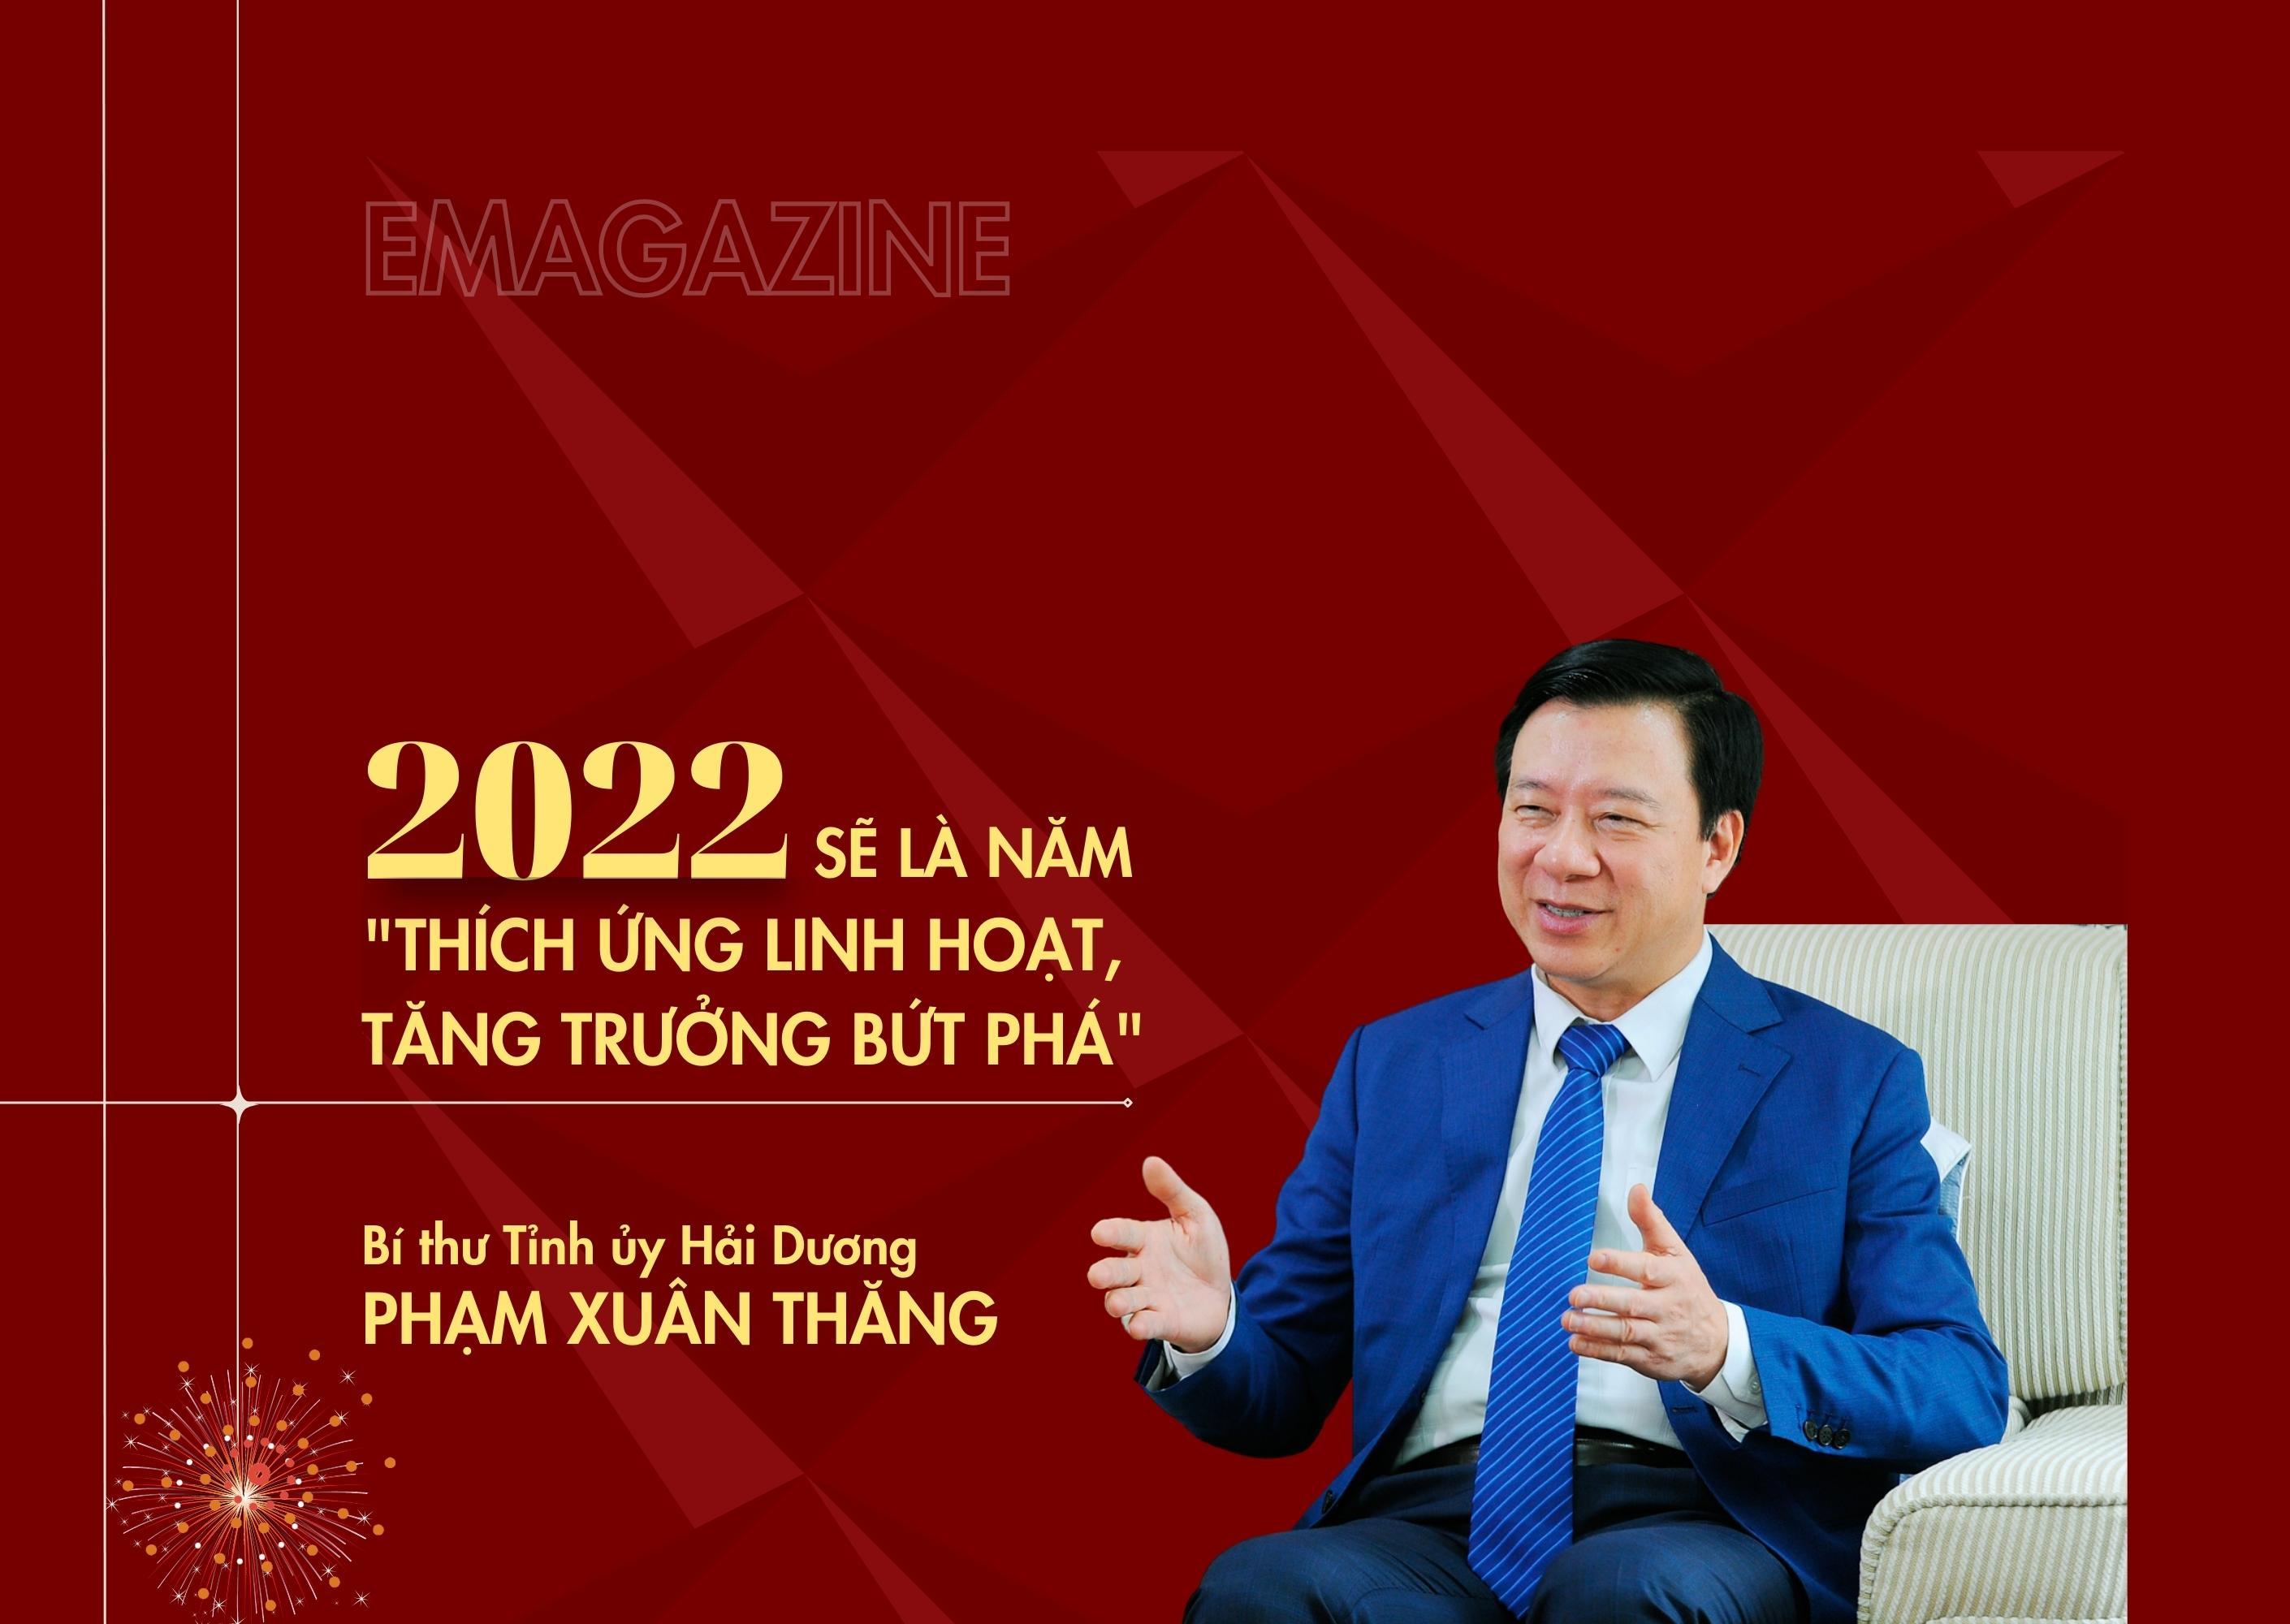 Bí thư Hải Dương Phạm Xuân Thăng: 2022 sẽ là năm “Thích ứng linh hoạt, tăng trưởng bứt phá”